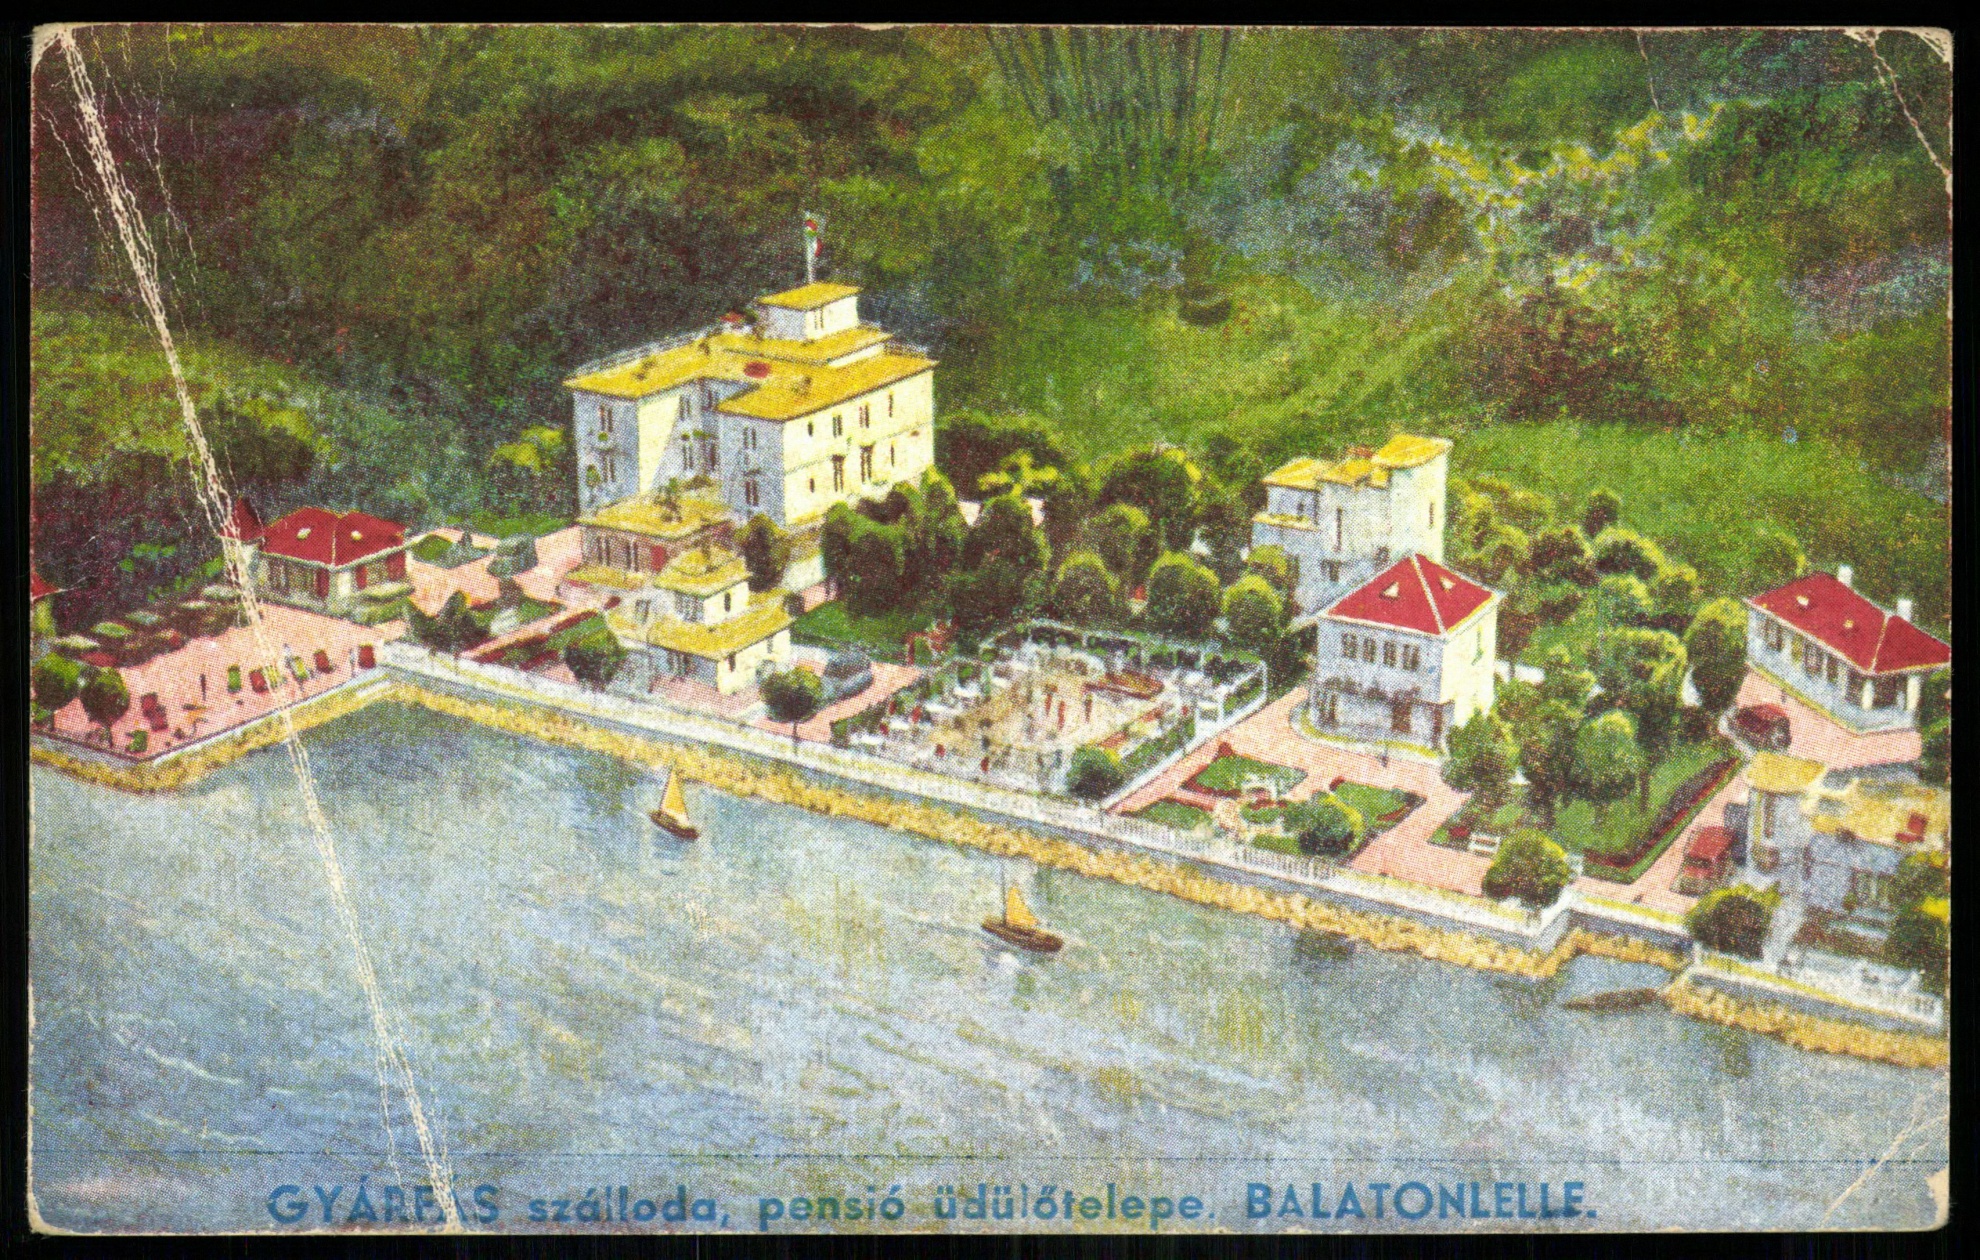 Balatonlelle Gyárfás szálloda, pensió üdülőtelepe (Magyar Kereskedelmi és Vendéglátóipari Múzeum CC BY-NC-ND)